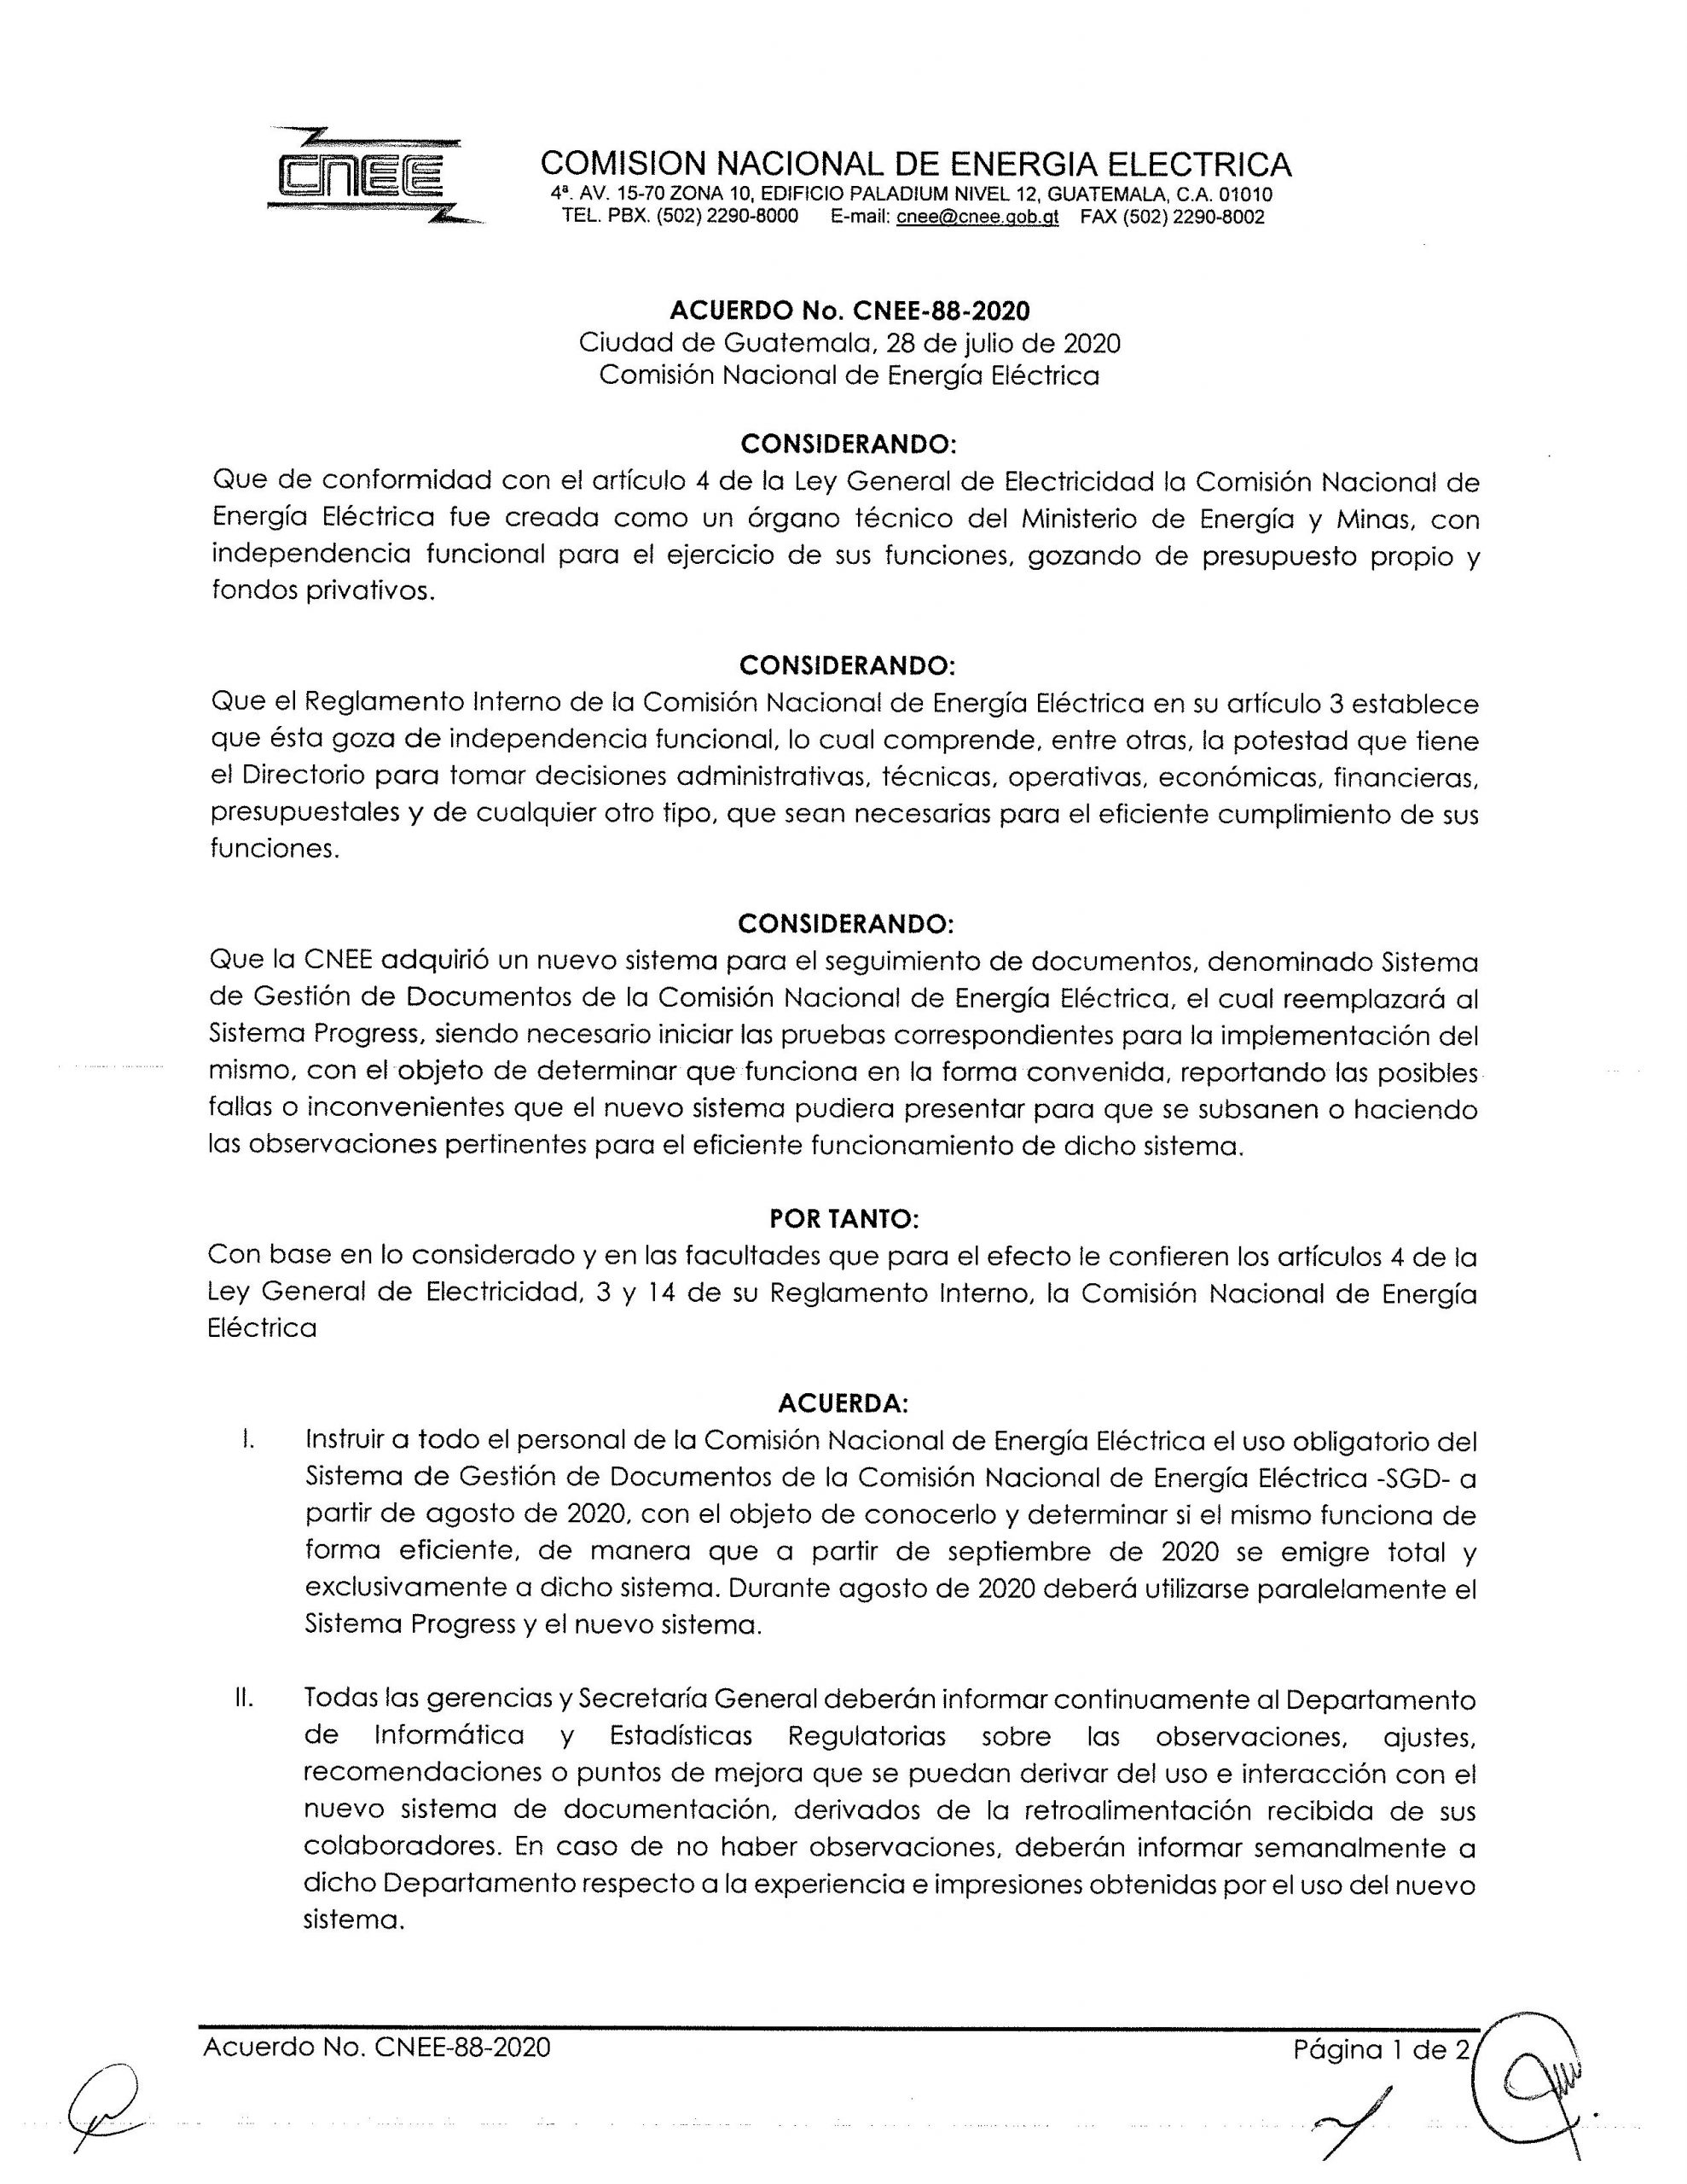 Acuerdo CNEE-88-2020, Sistema de Gestión de Documentos